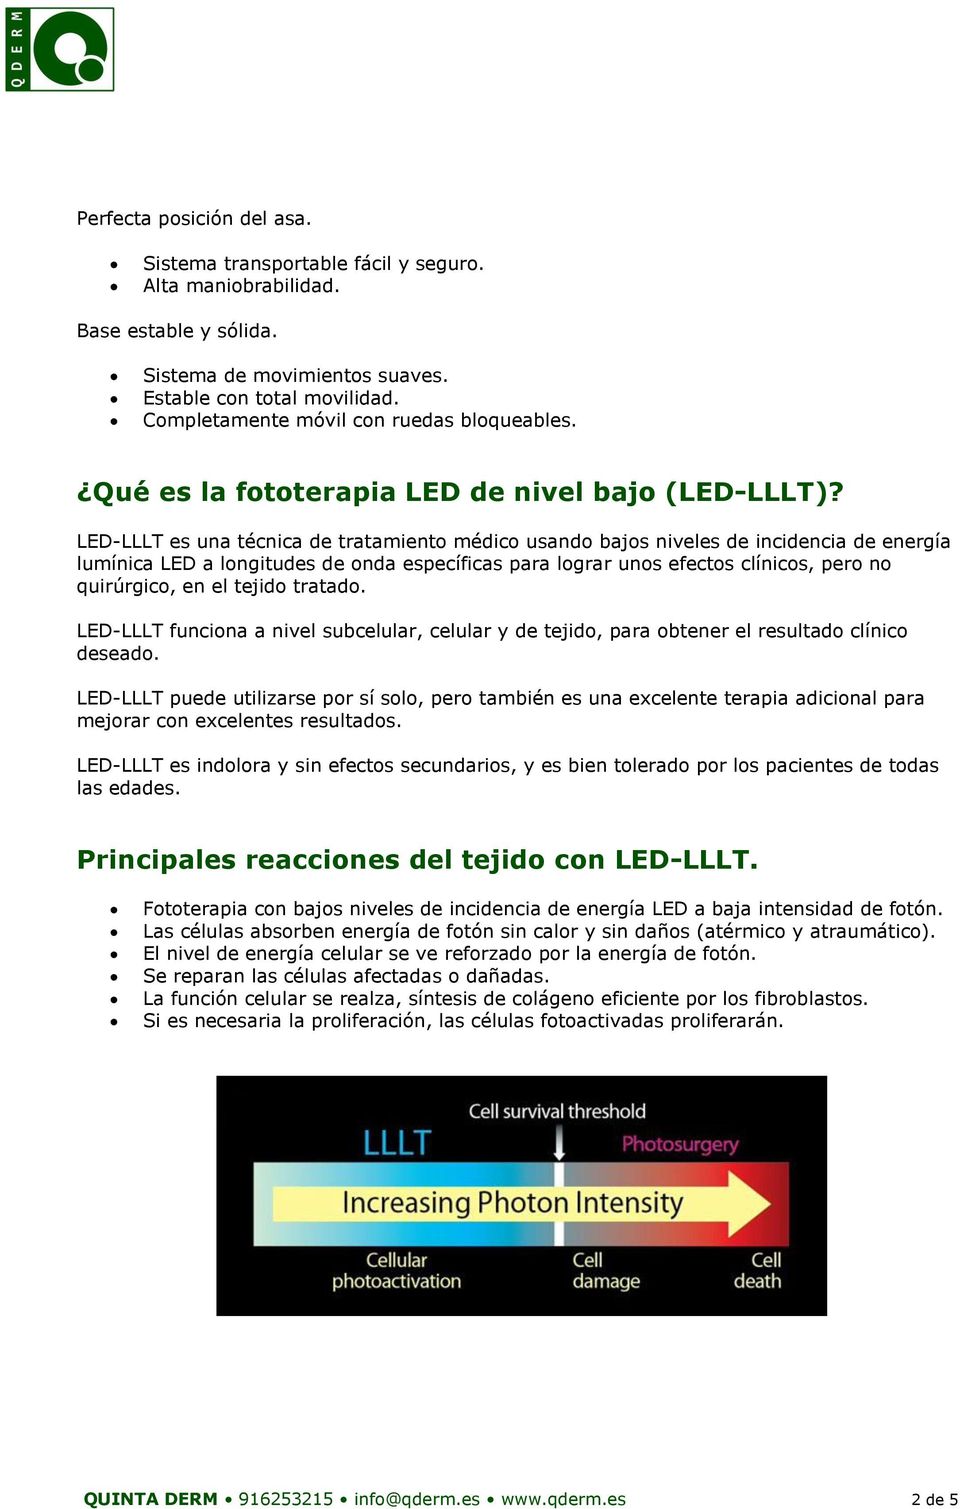 LED-LLLT es una técnica de tratamiento médico usando bajos niveles de incidencia de energía lumínica LED a longitudes de onda específicas para lograr unos efectos clínicos, pero no quirúrgico, en el